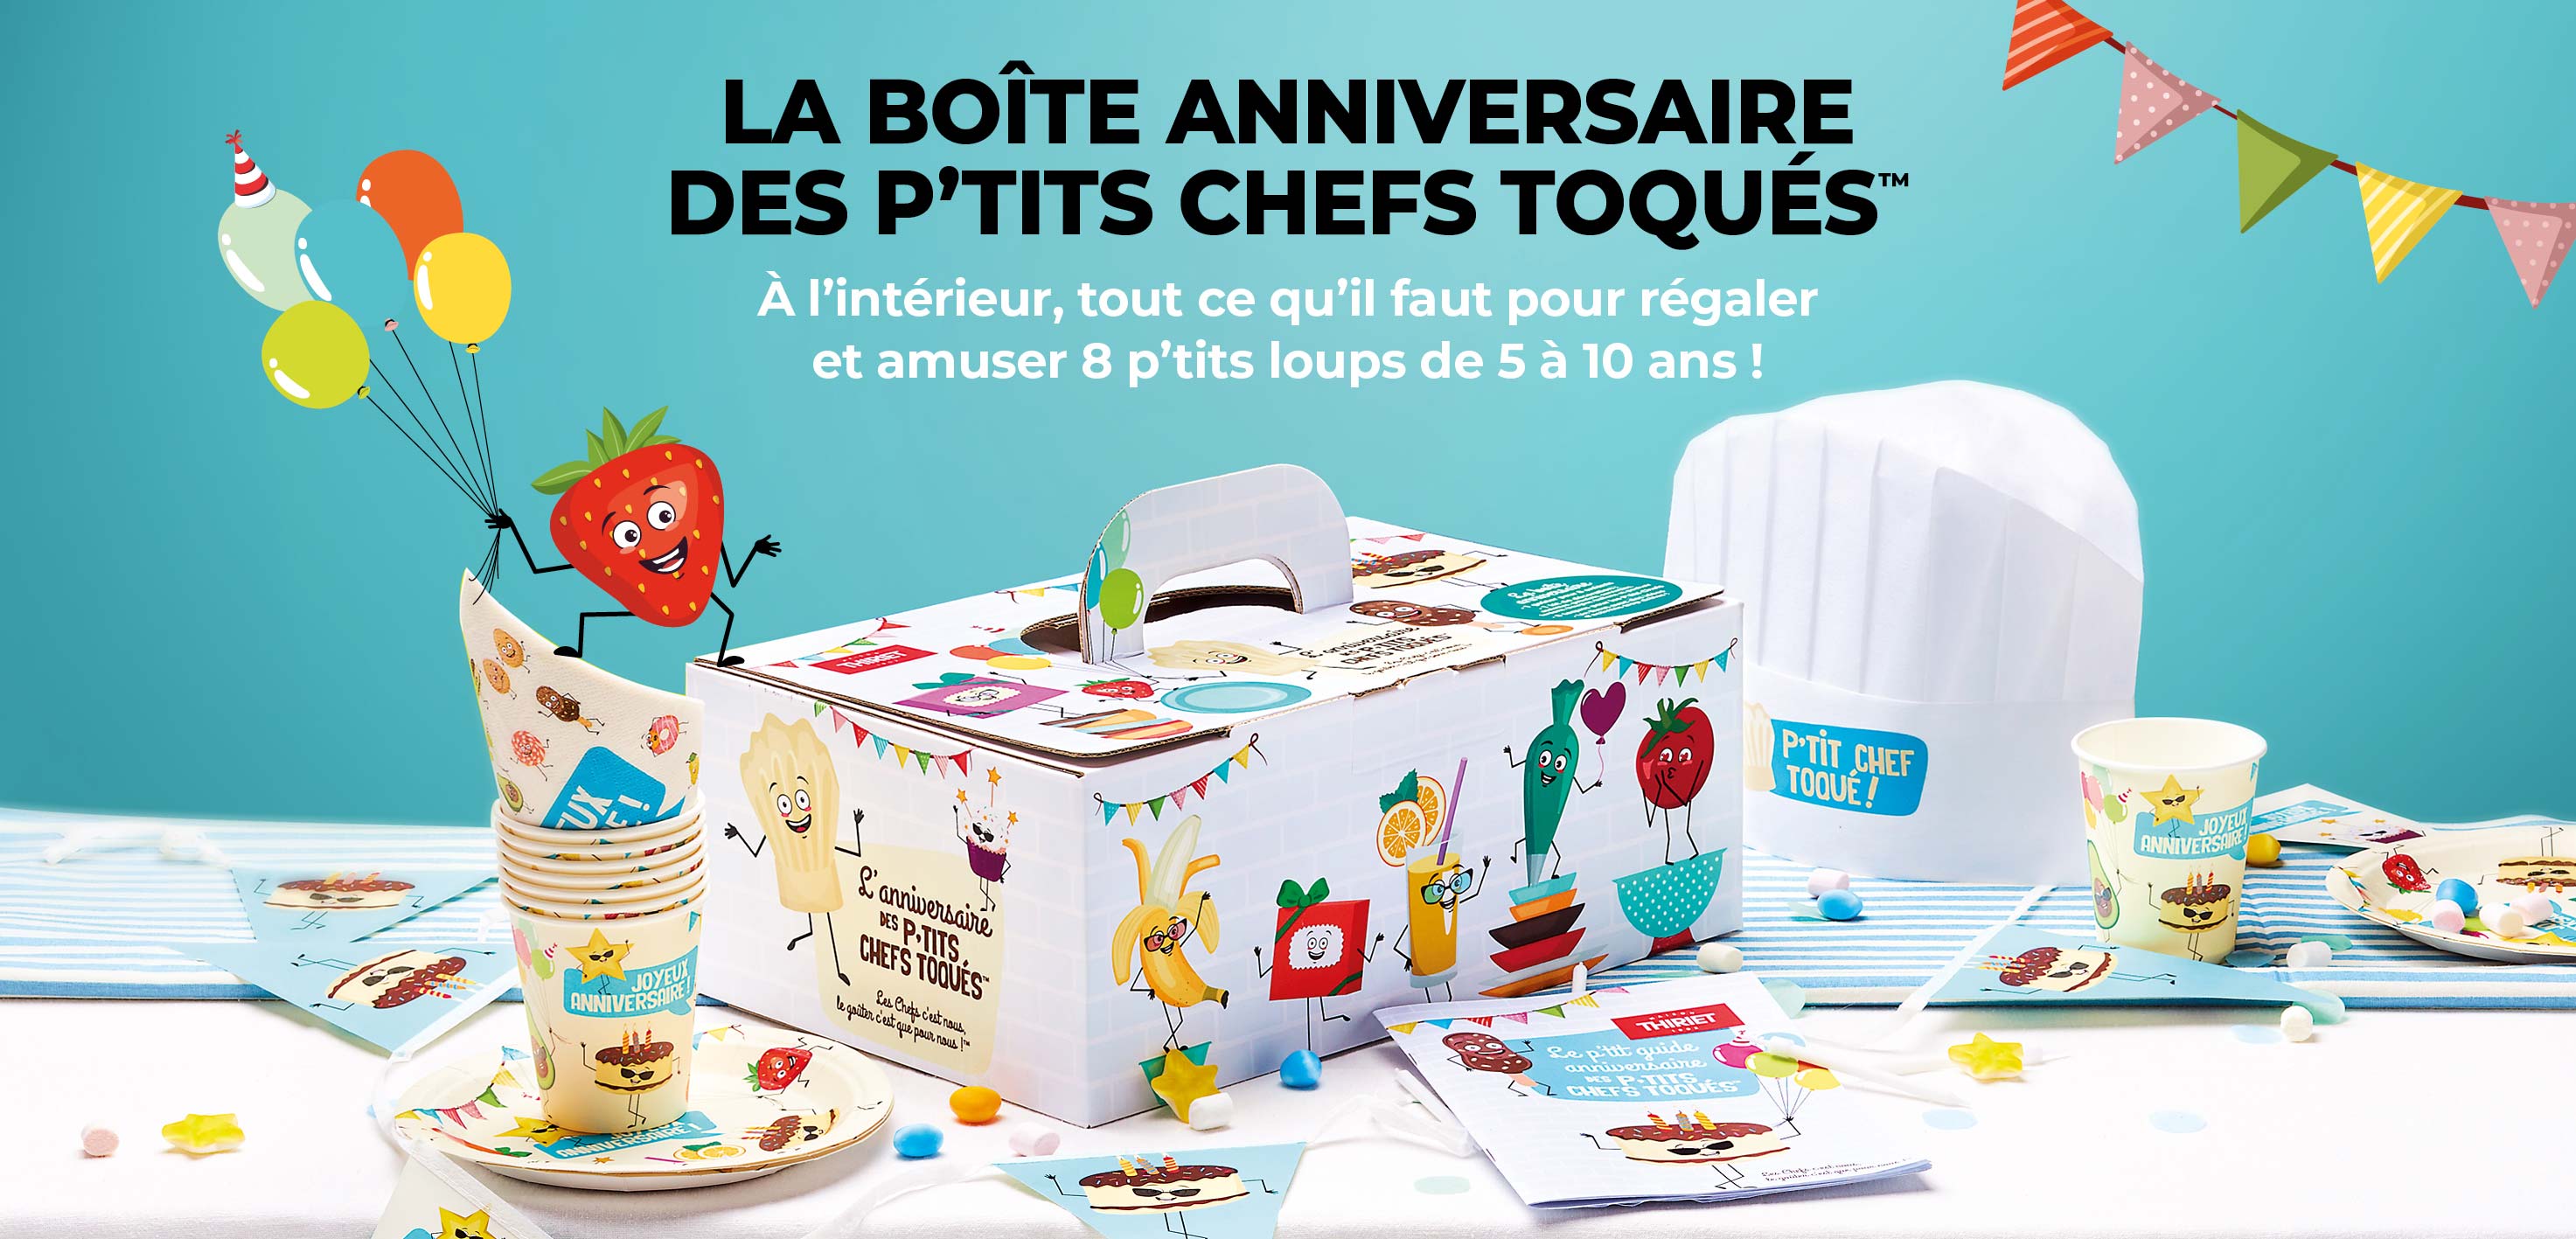 Découvrez la boîte anniversaire des p'tits chefs toqués de la Maison Thiriet, prévue pour 8 enfants de 5 à 10 ans